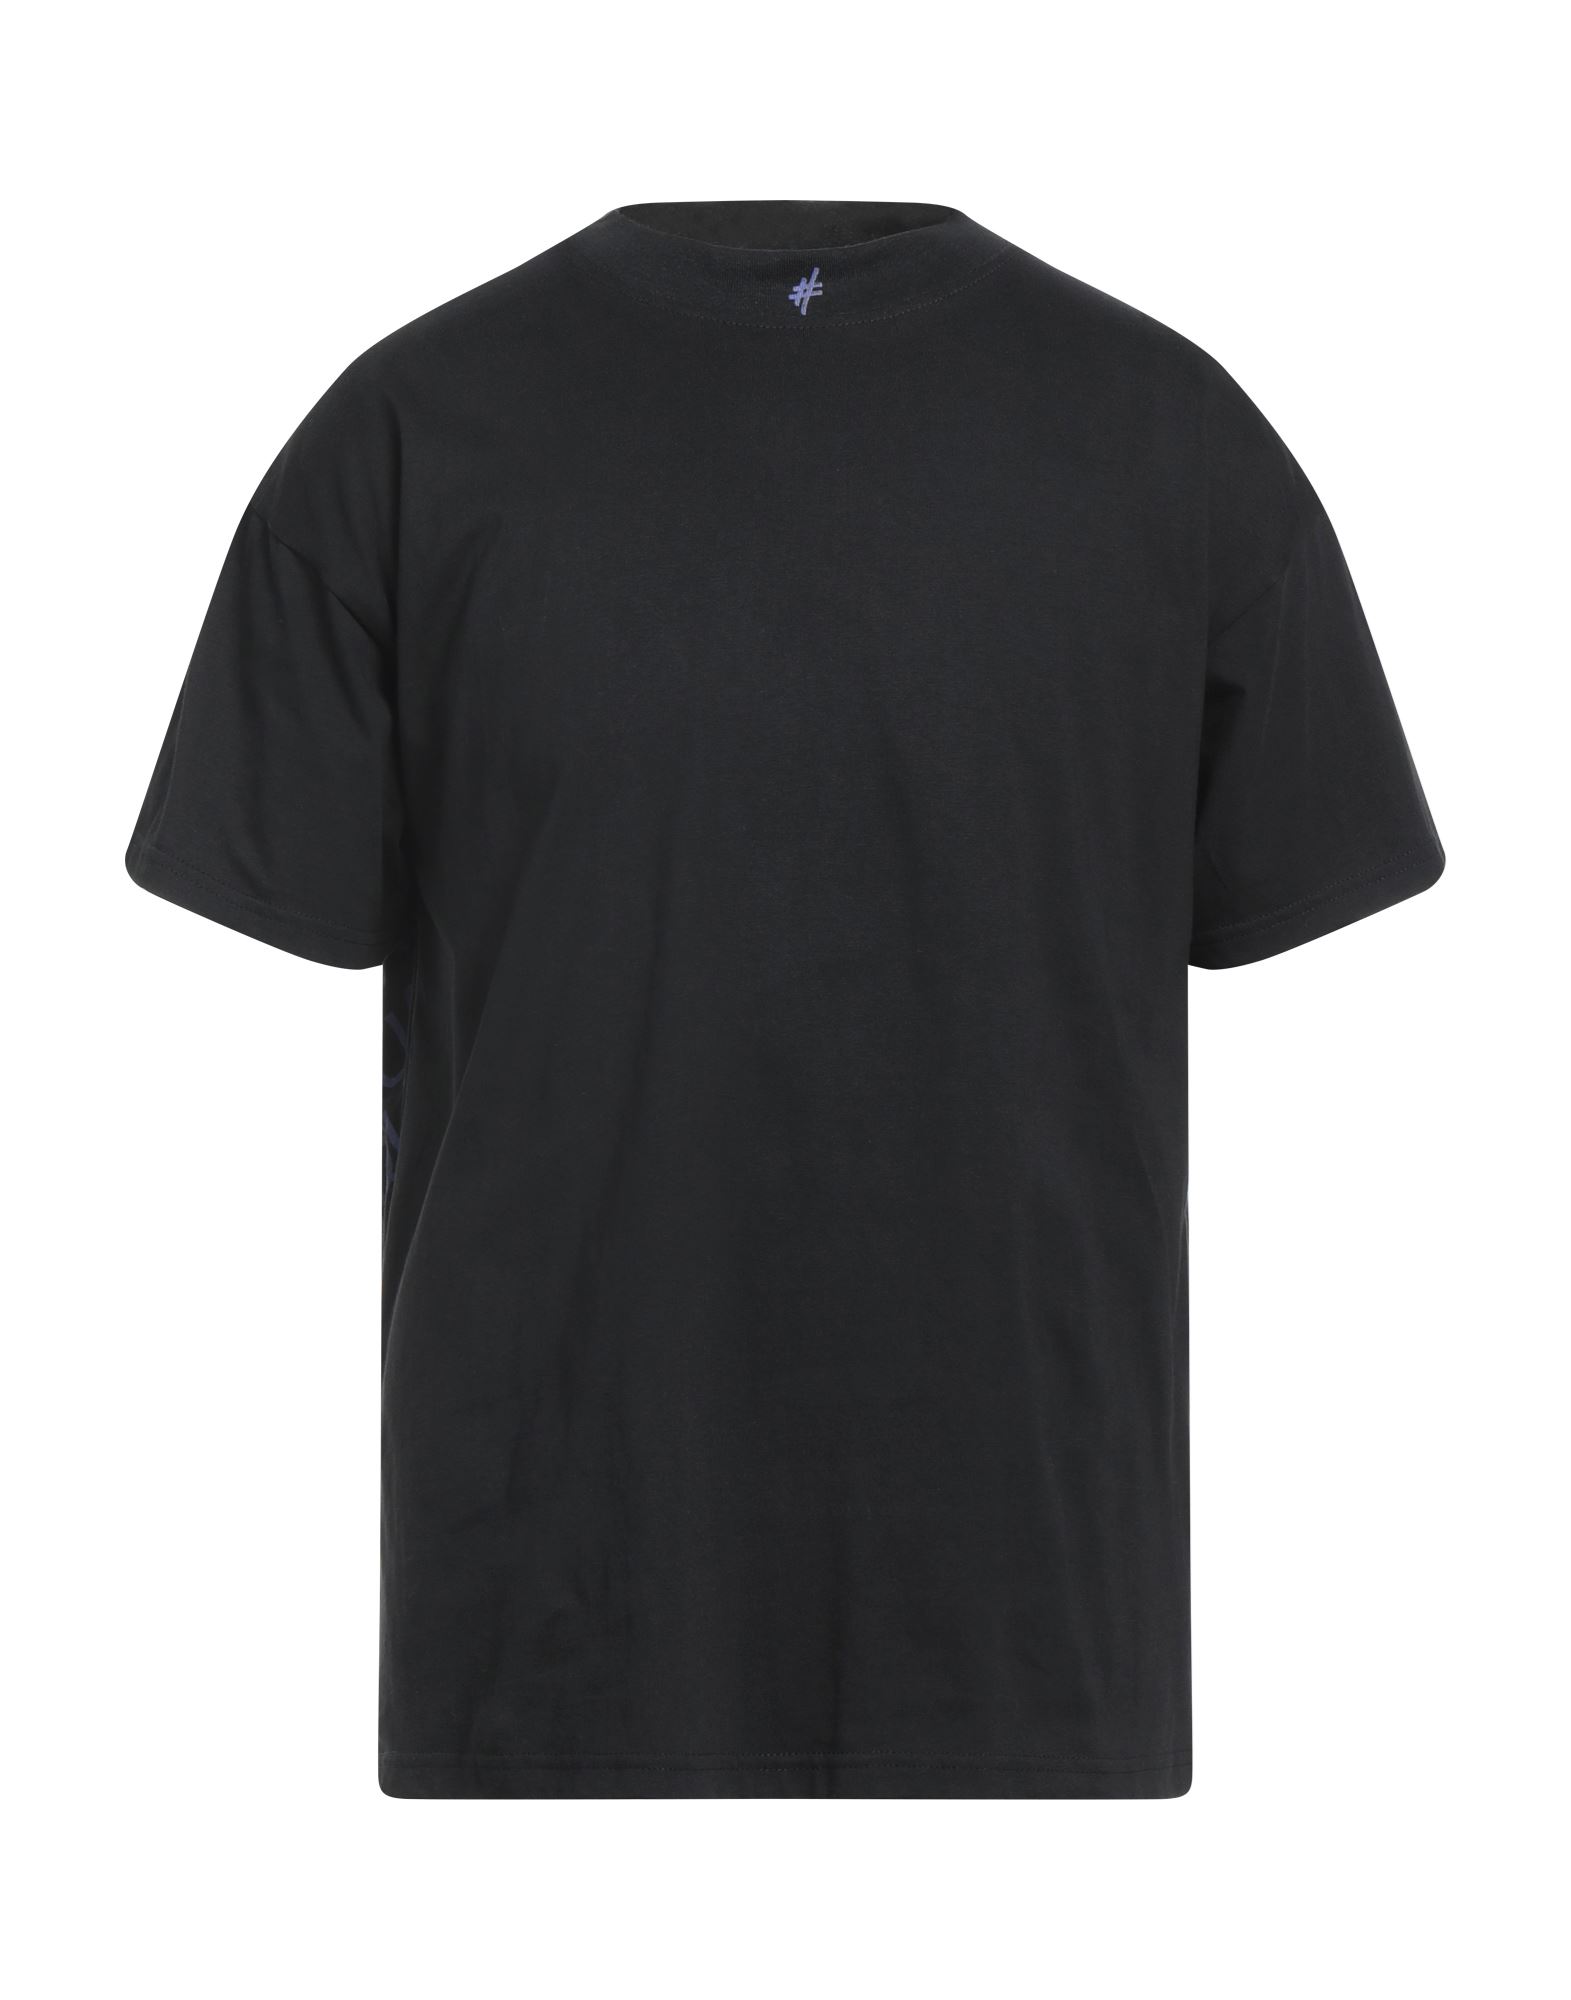 Alessandro Dell'acqua Man T-shirt Black Size L Cotton